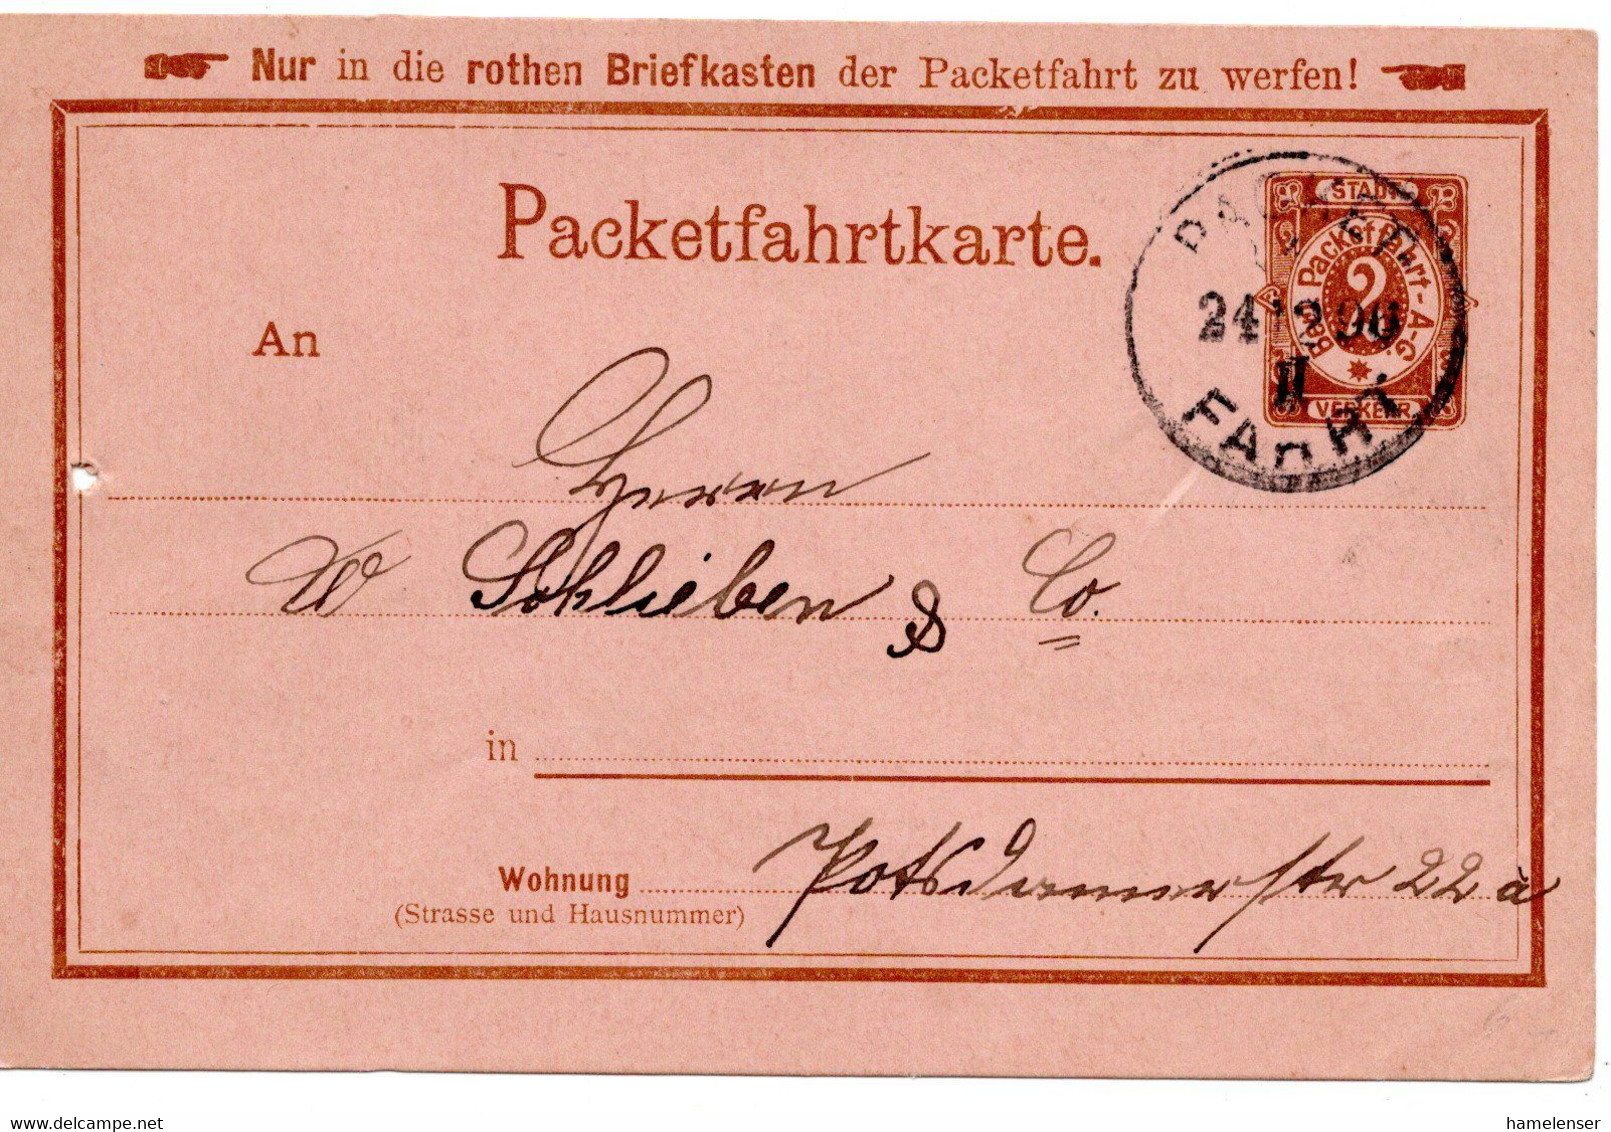 55430 - Deutsches Reich / Berliner Packetfahrt - 1896 - 2Pfg. GAKte. PACKET FAHRT - Correos Privados & Locales